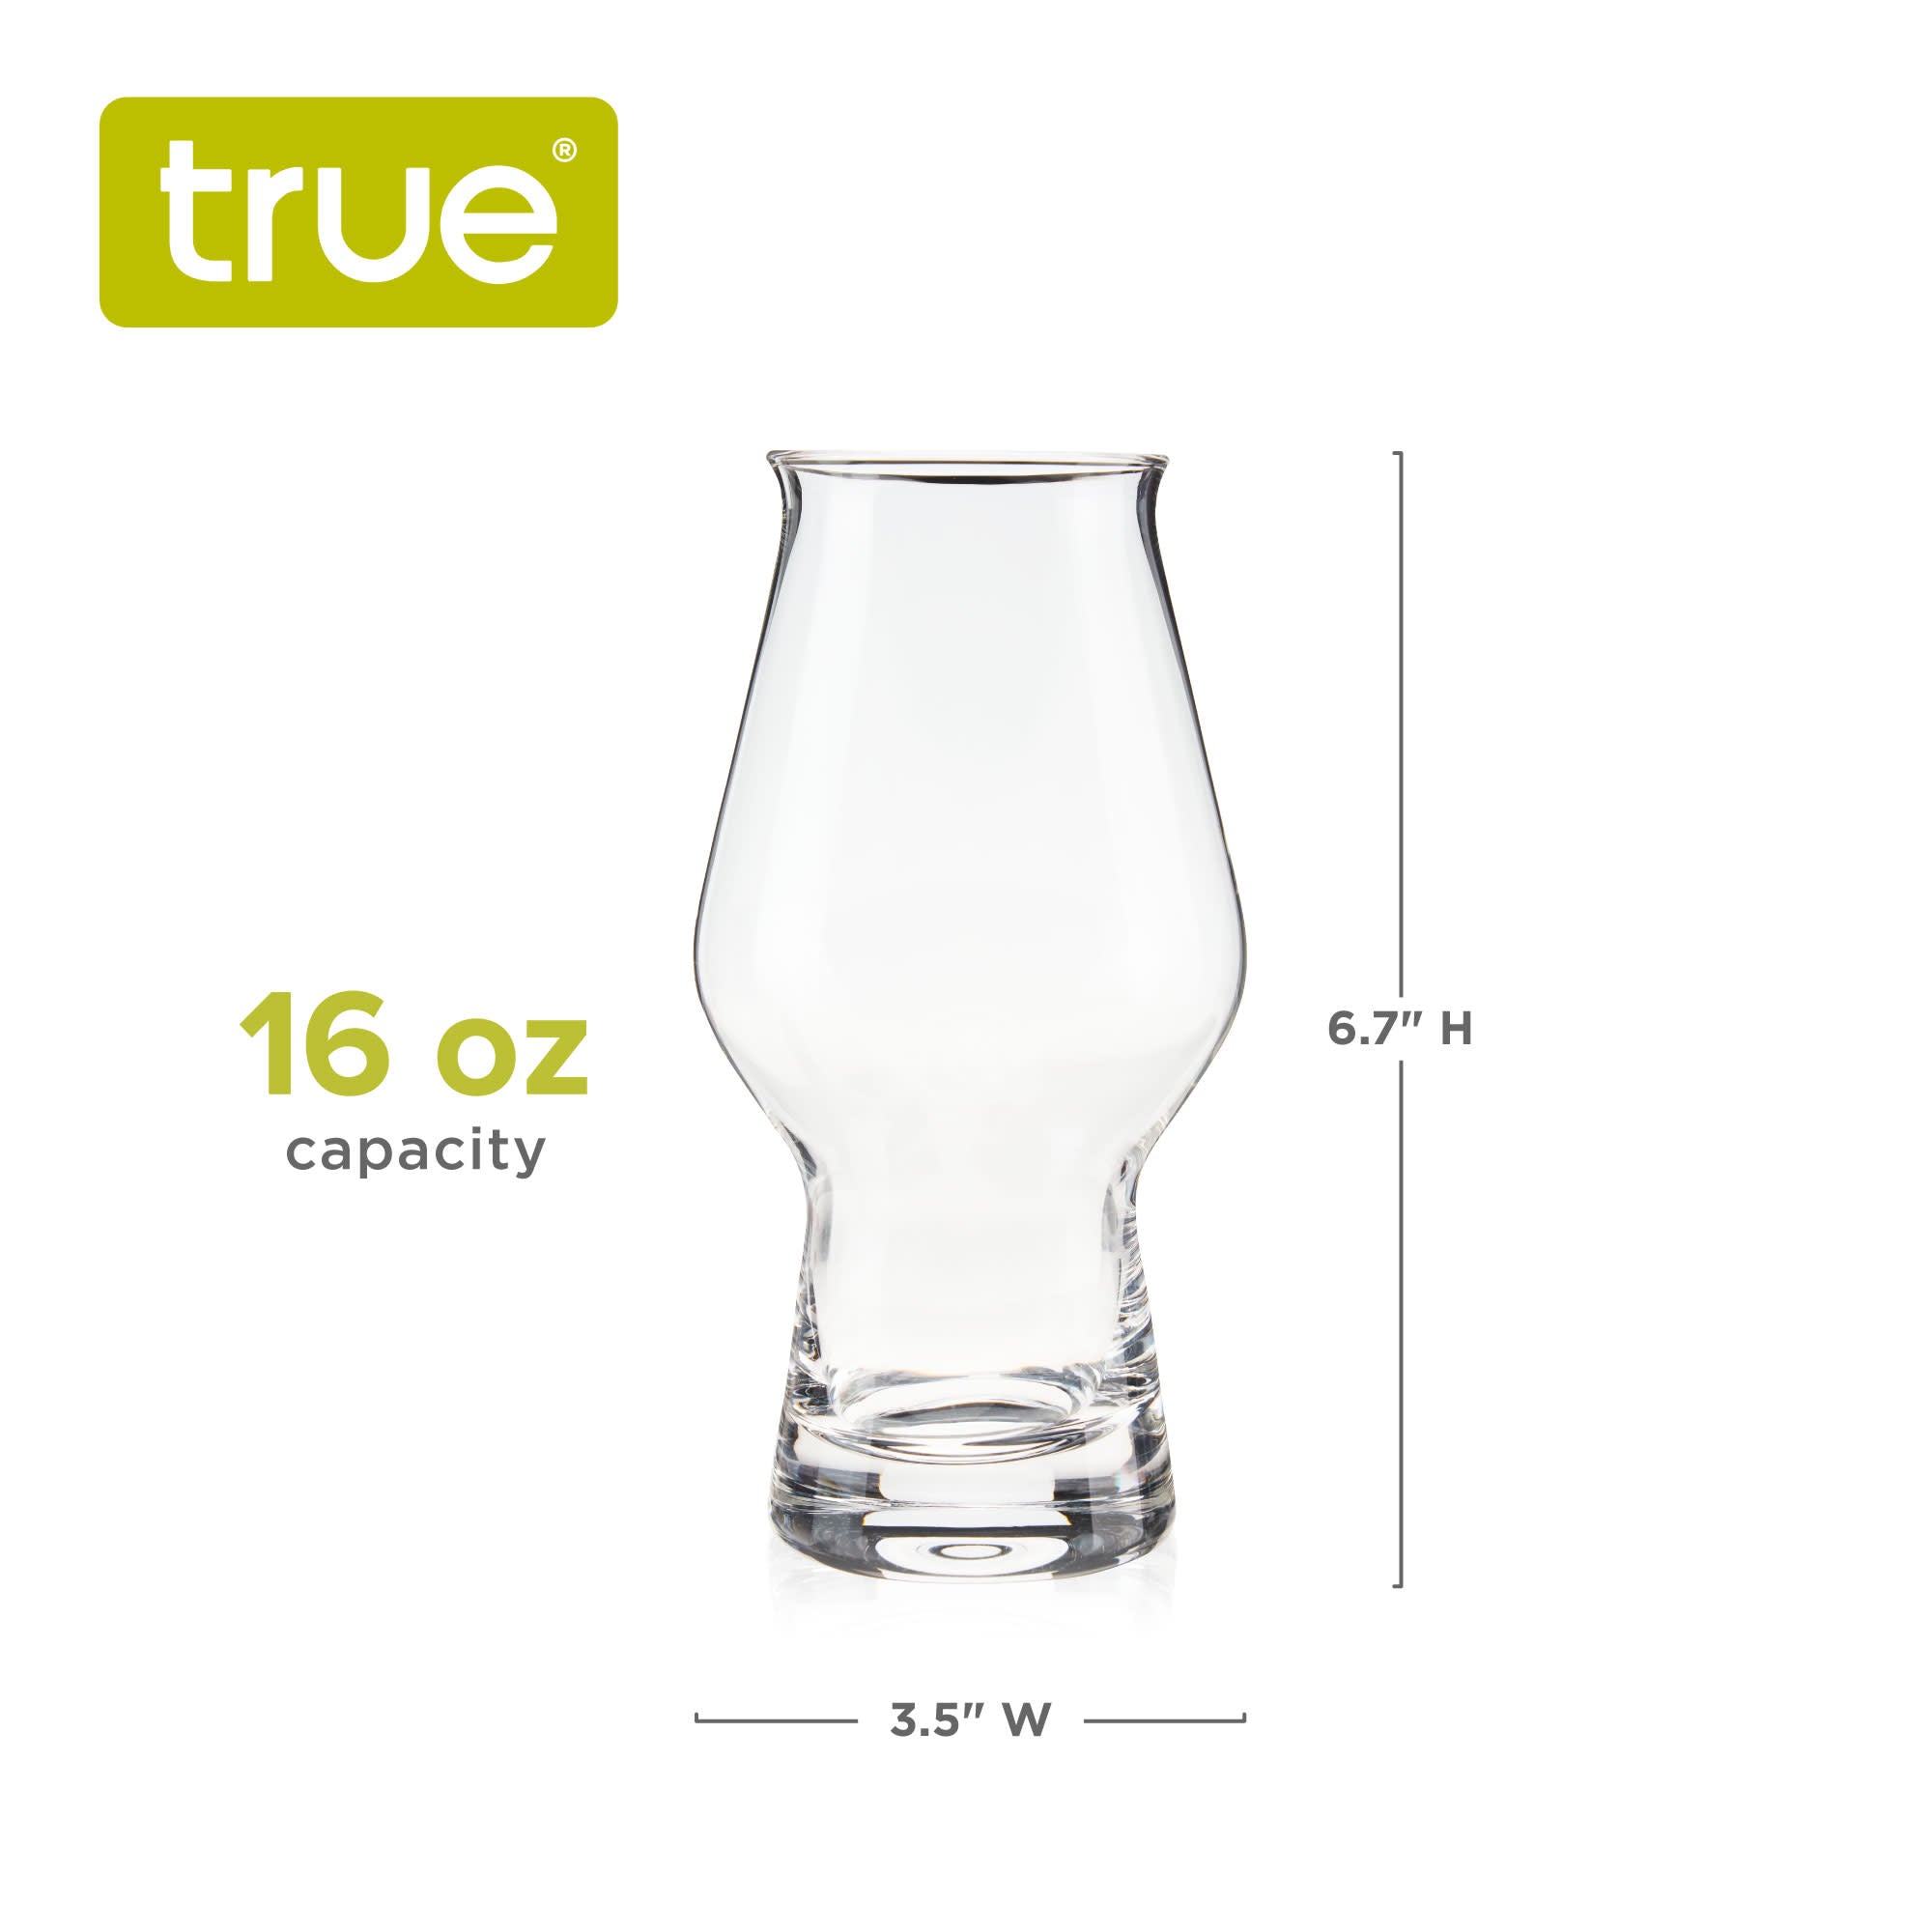 IPA Beer Glasses, Set of 4 by True (9955) Drinkware True 